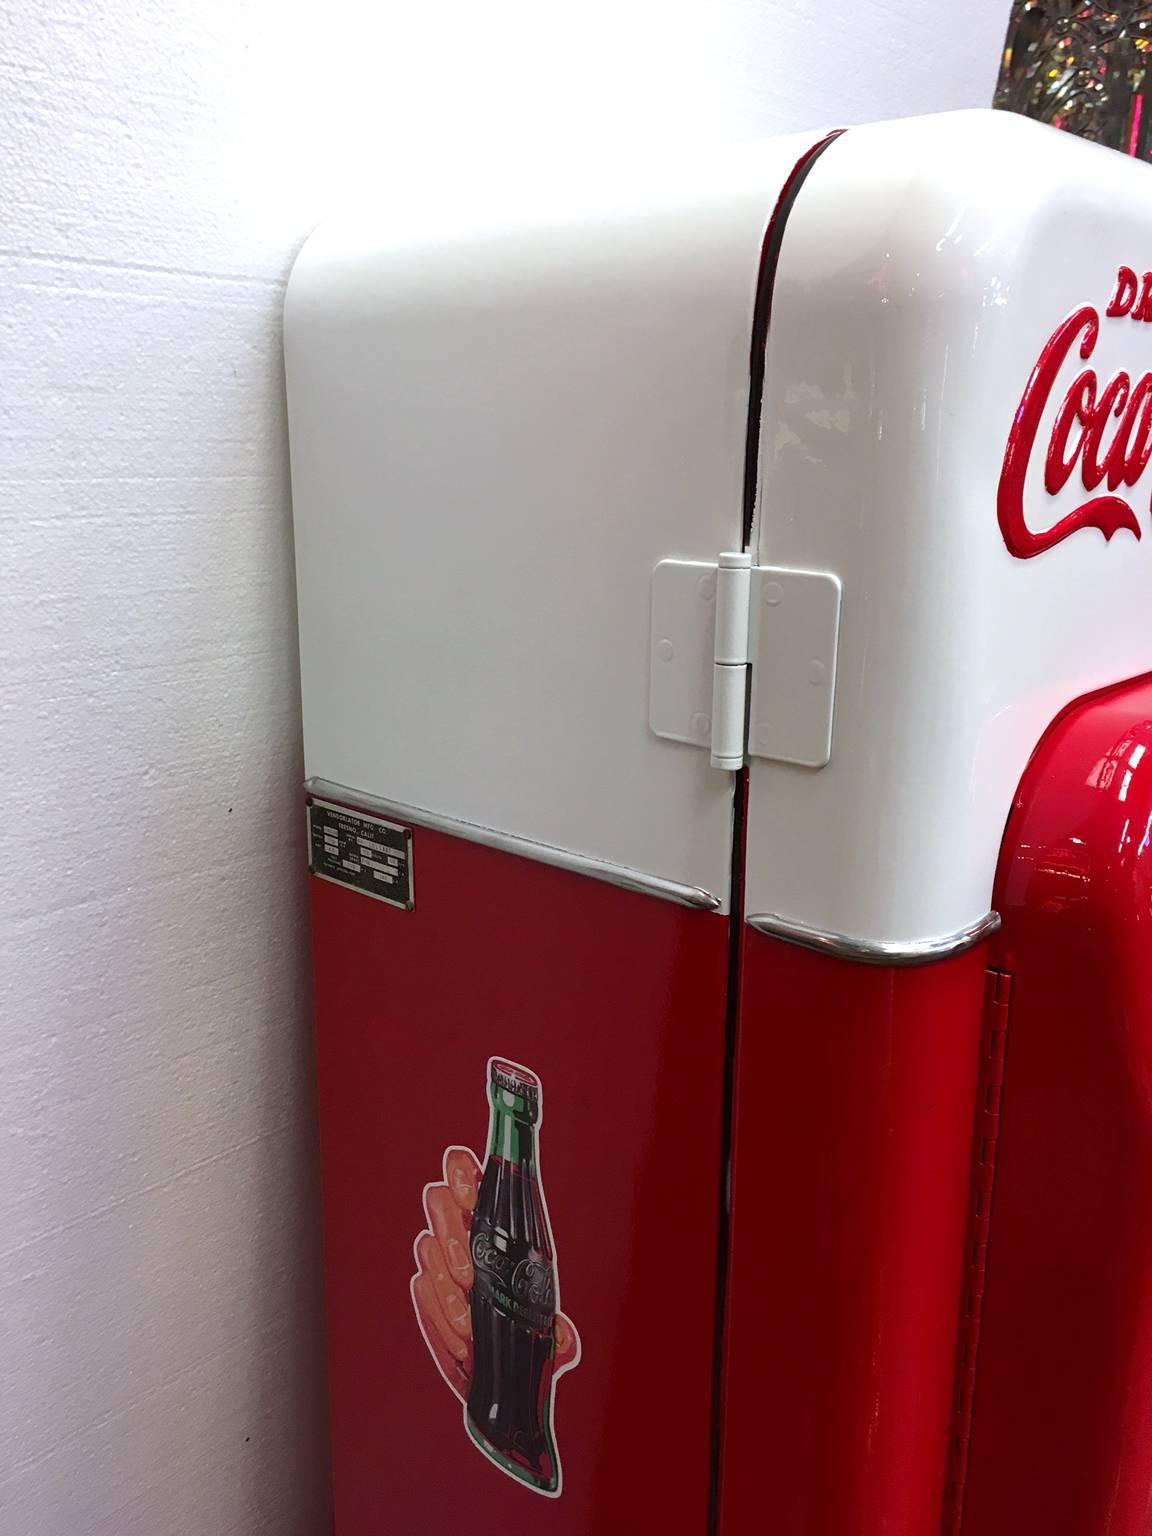 20th Century Vendo 44 Coca-Cola Vending Machine For Sale